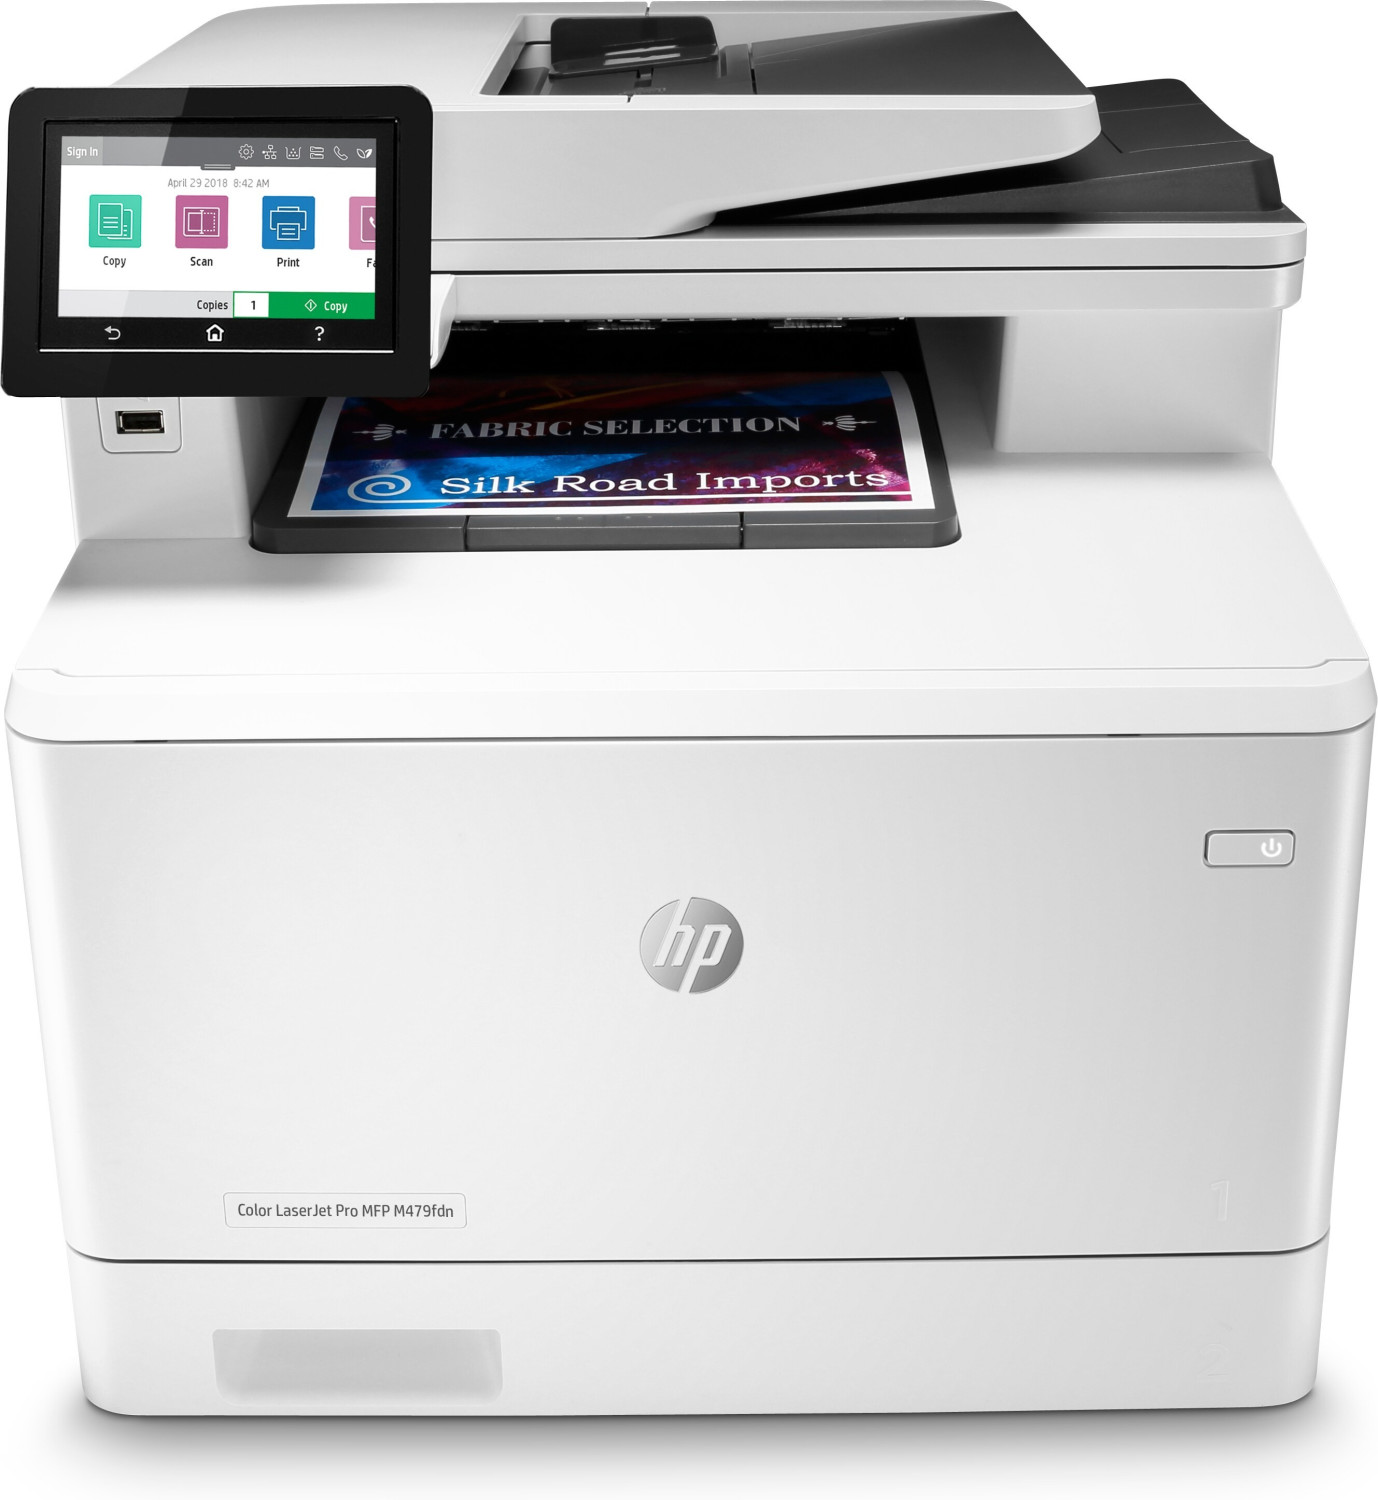 Image of HP Color LaserJet Pro Stampante multifunzione M479fdn, Stampa, copia, scansione, fax, e-mail, scansione verso e-mail/PDF; stampa fronte/retro; ADF da 50 fogli integri